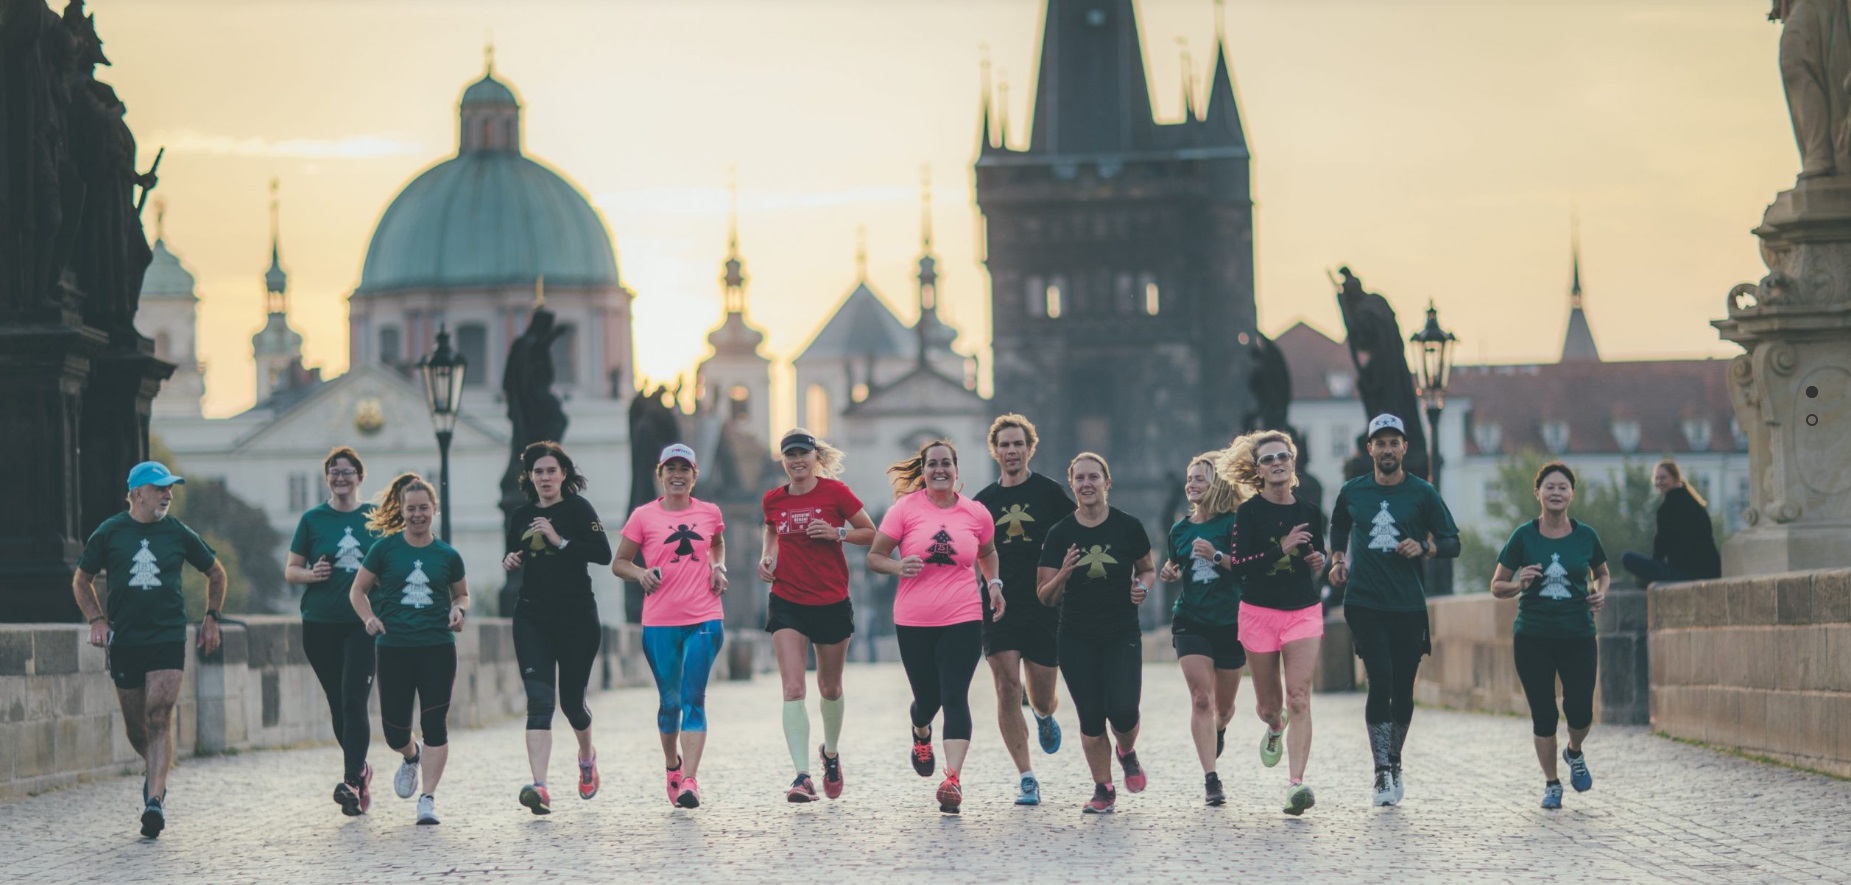 V charitativní adventní běžecké výzvě letos mezi sebou soutěží i kraje